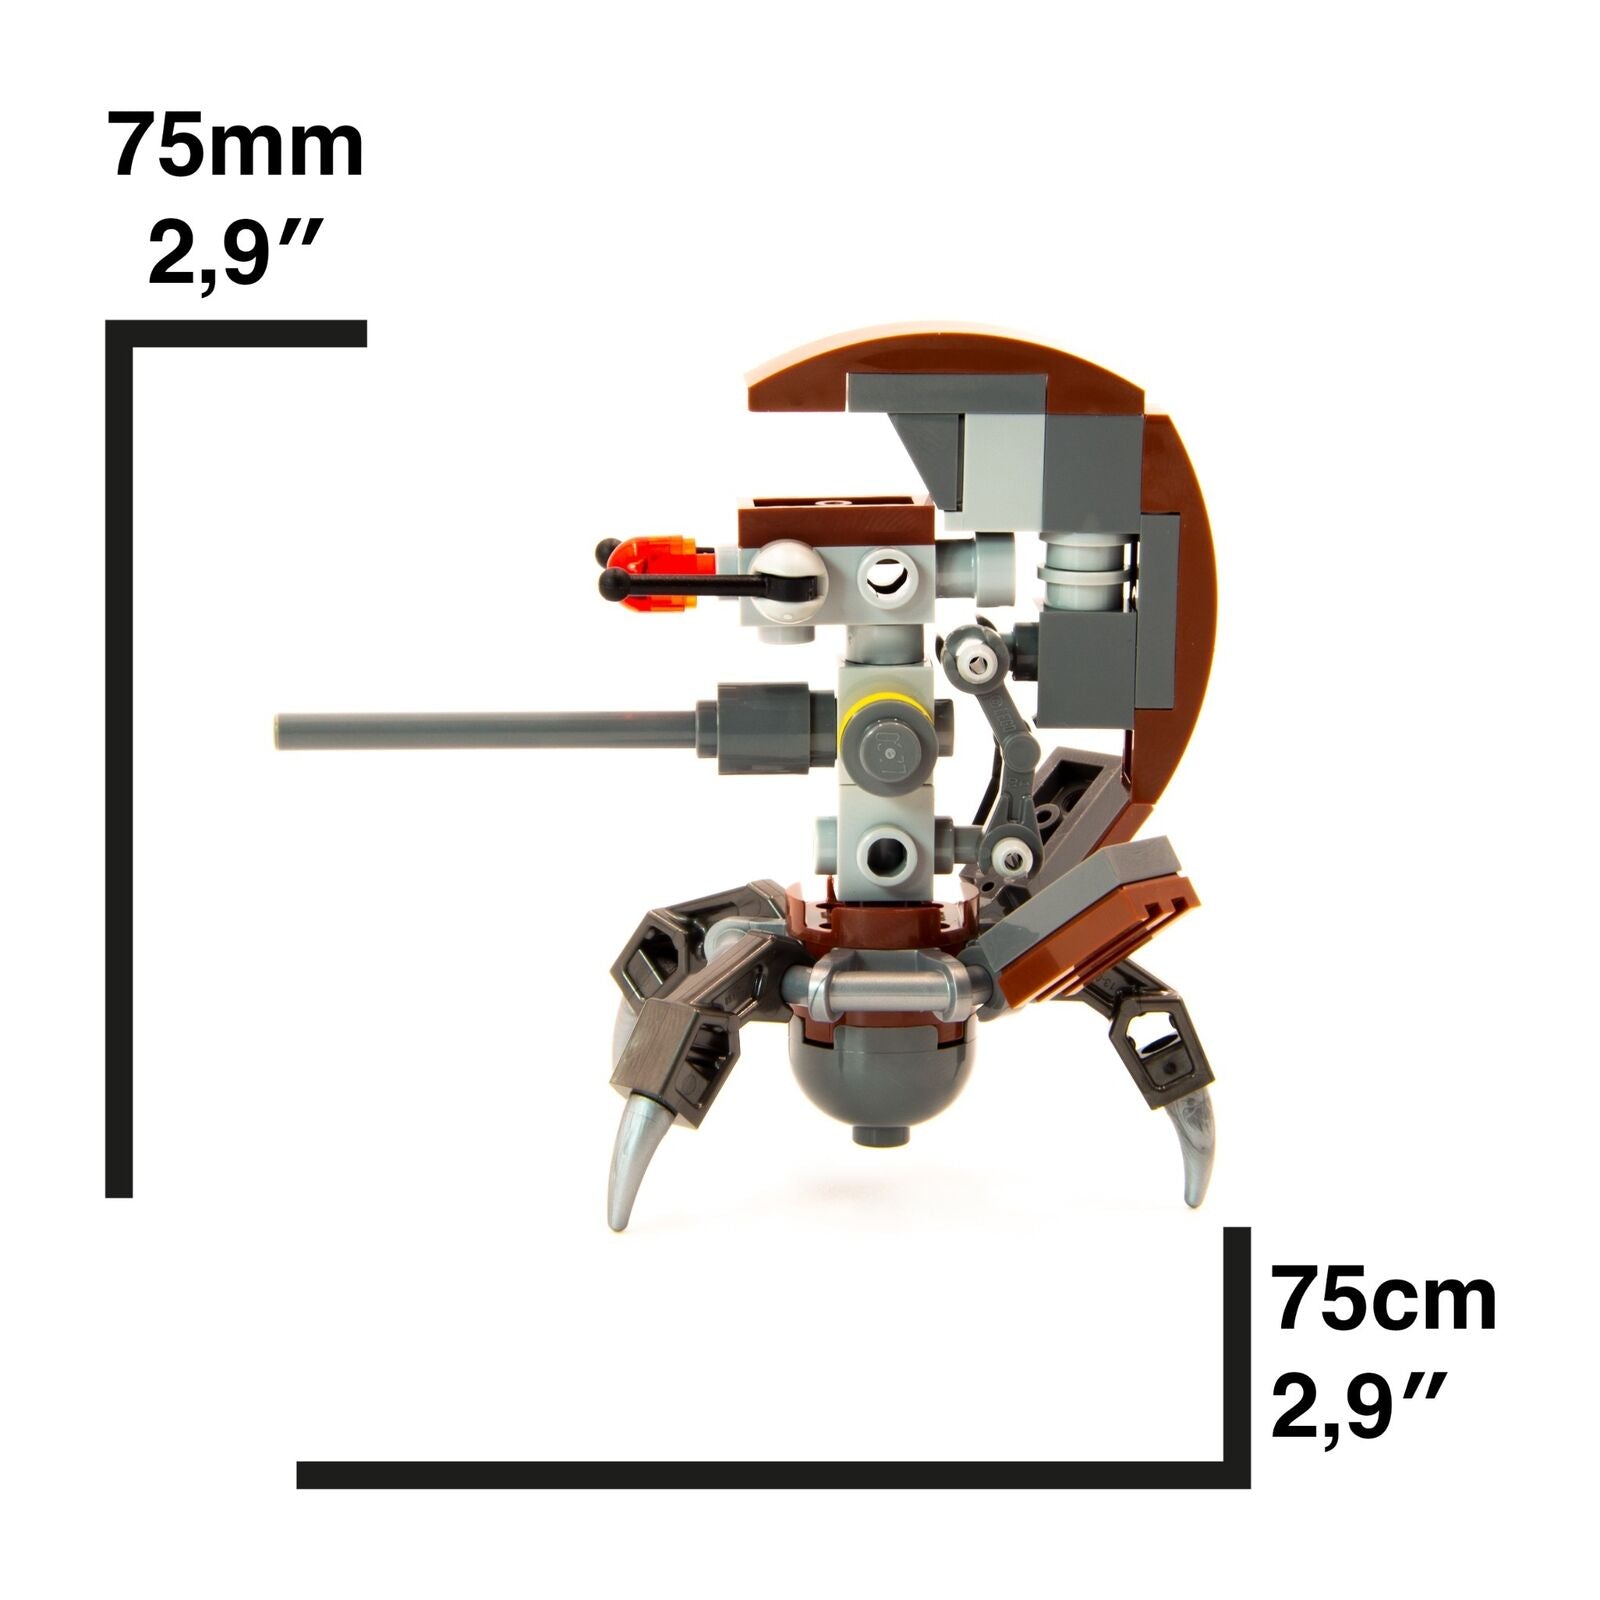 LEGO Star Wars Minifigure - Droideka (Sniper)